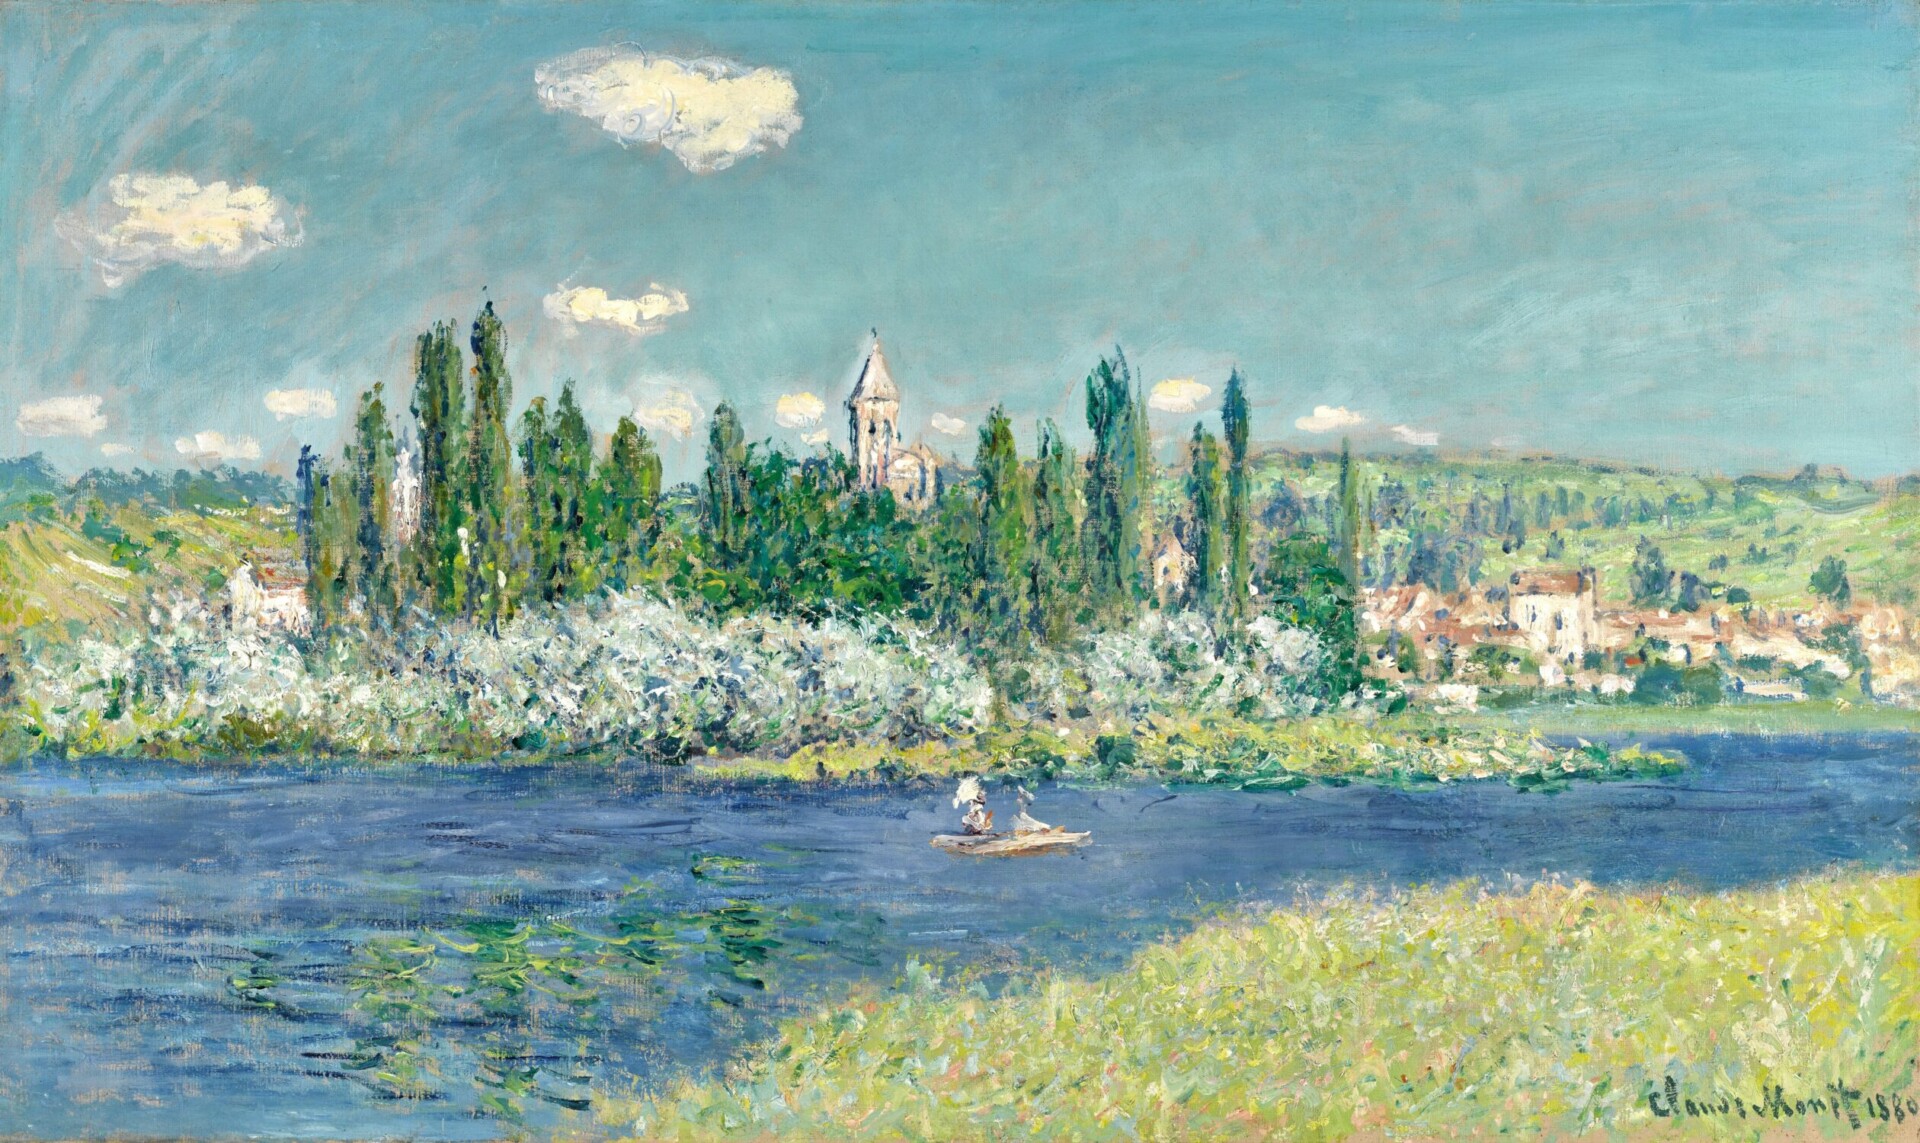 Claude Monet, Vétheuil, 1880 (est. £10,000,000-15,000,000). Photo Courtesy of Sotheby's